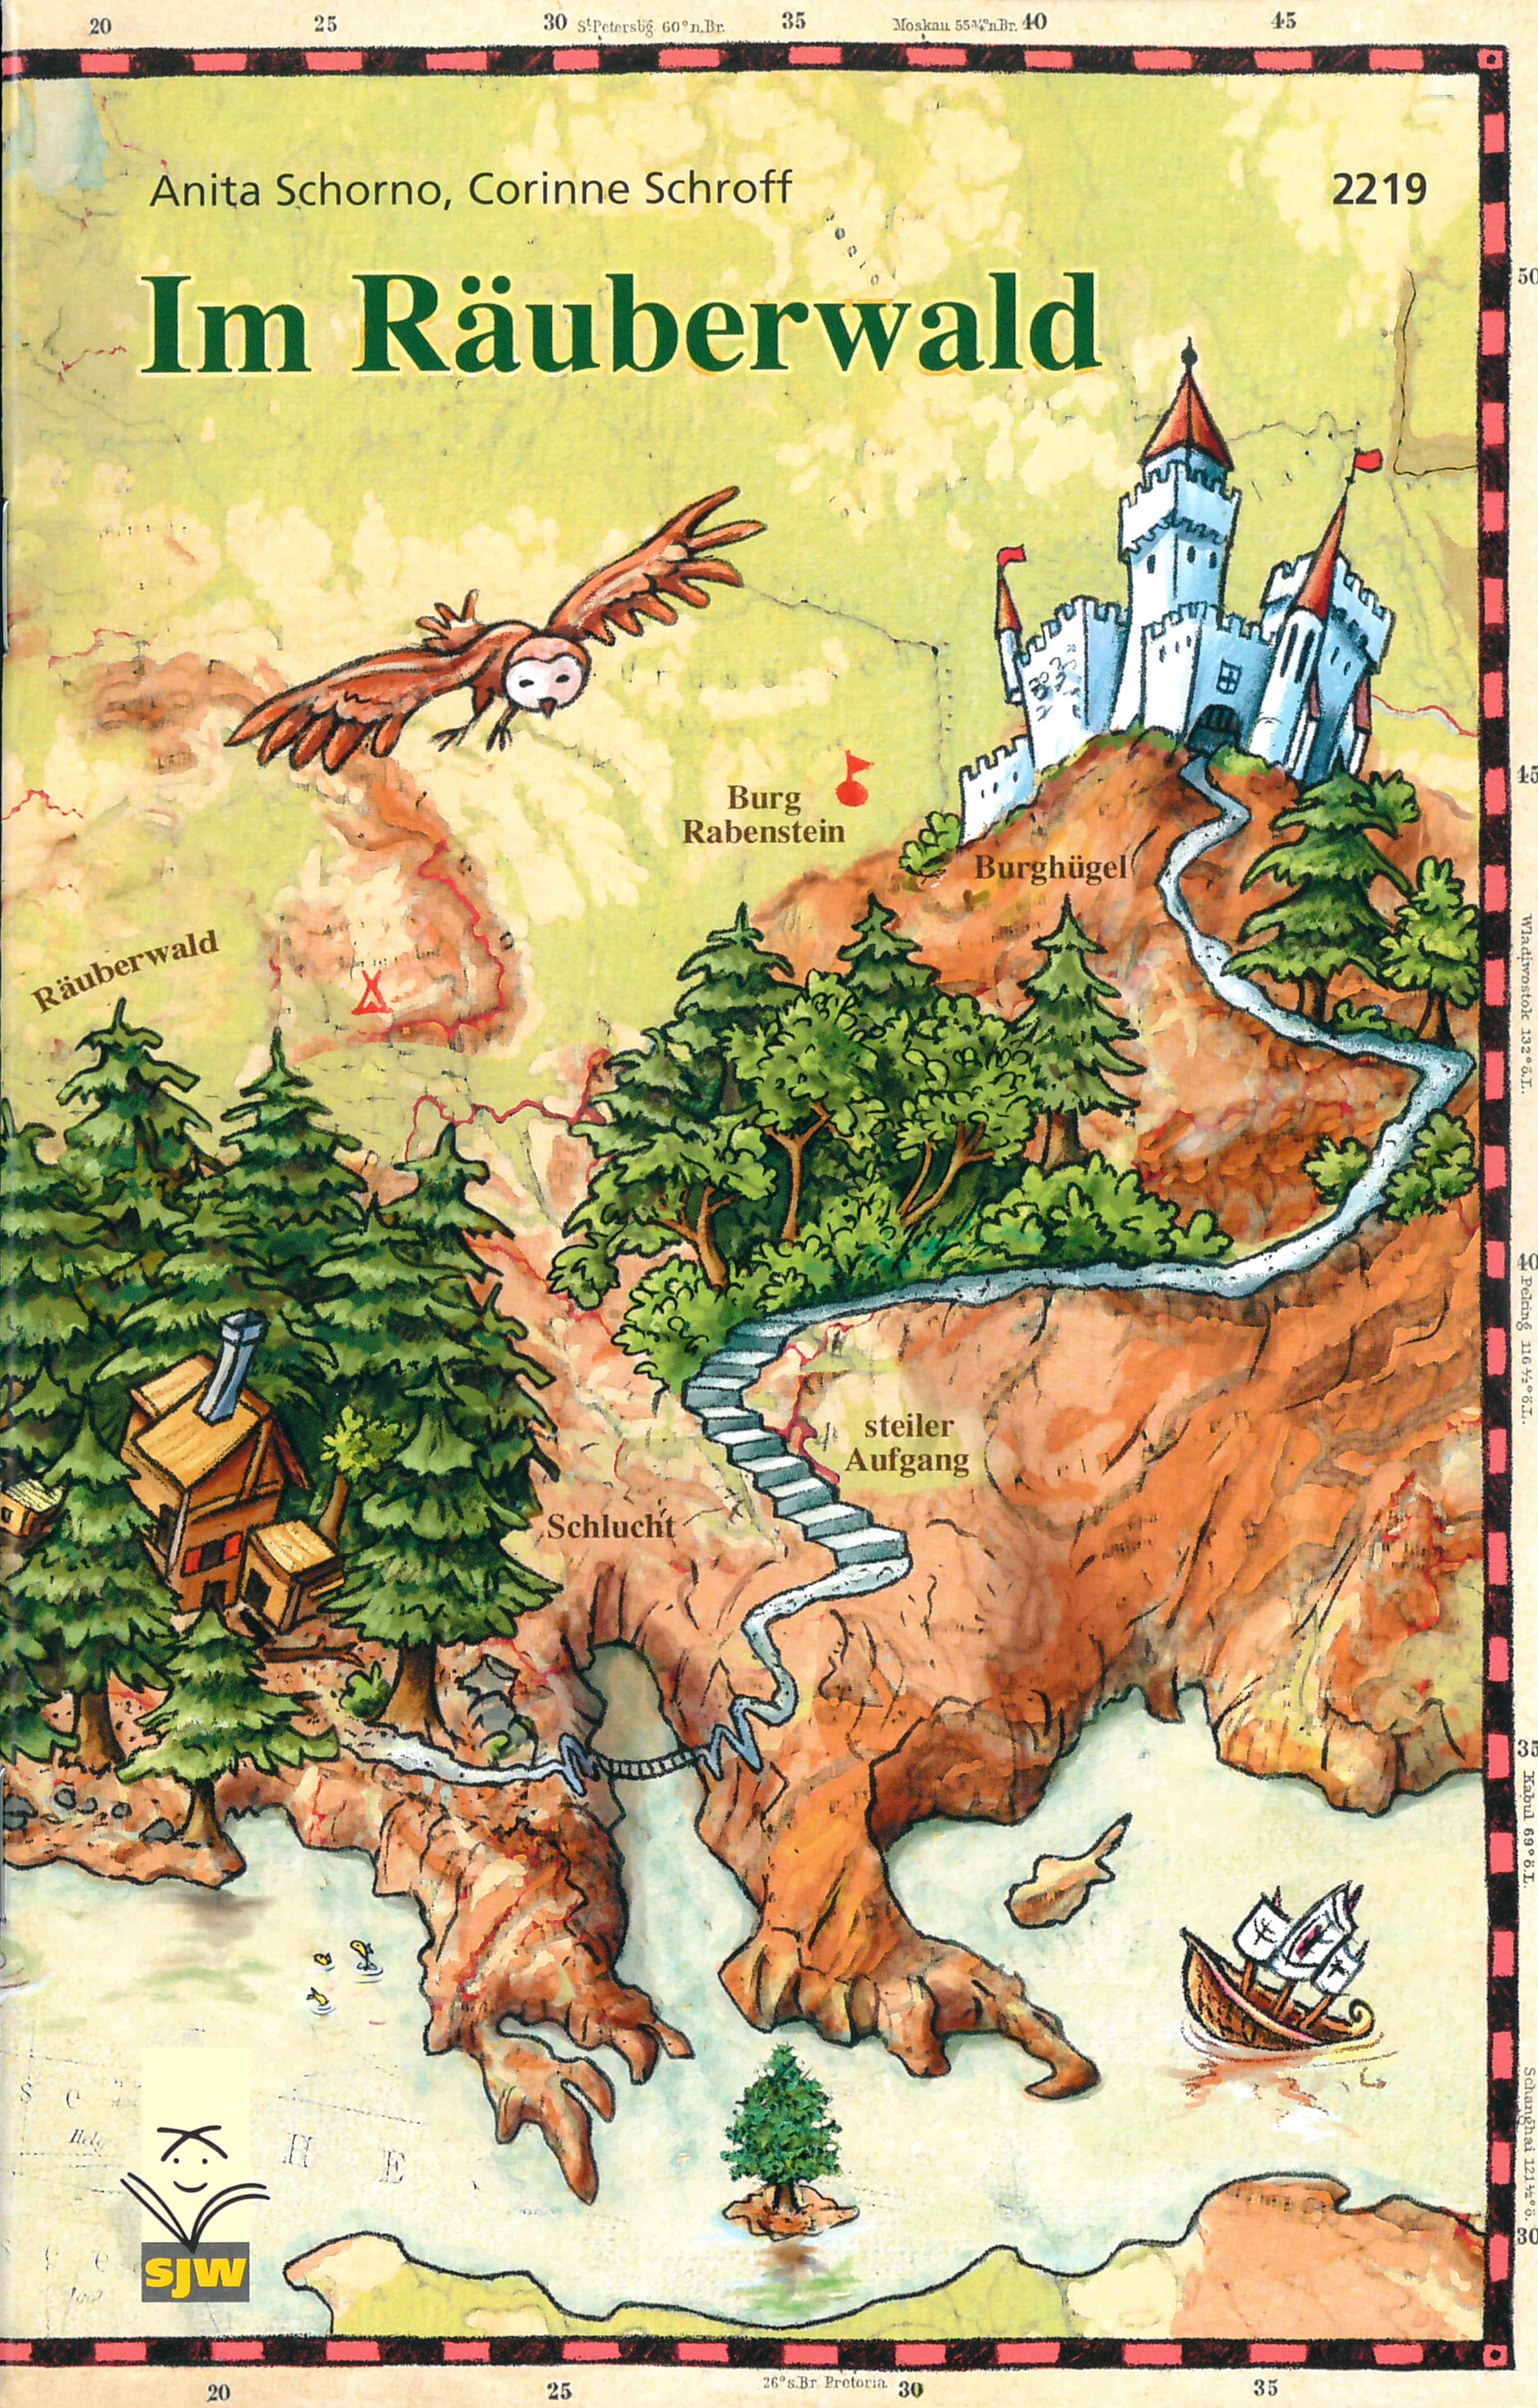 Im Raeuberwald, ein Kinderbuch von Anita Schorno, Illustration von Corinne Schroff, SJW Verlag, Raeubergeschichte